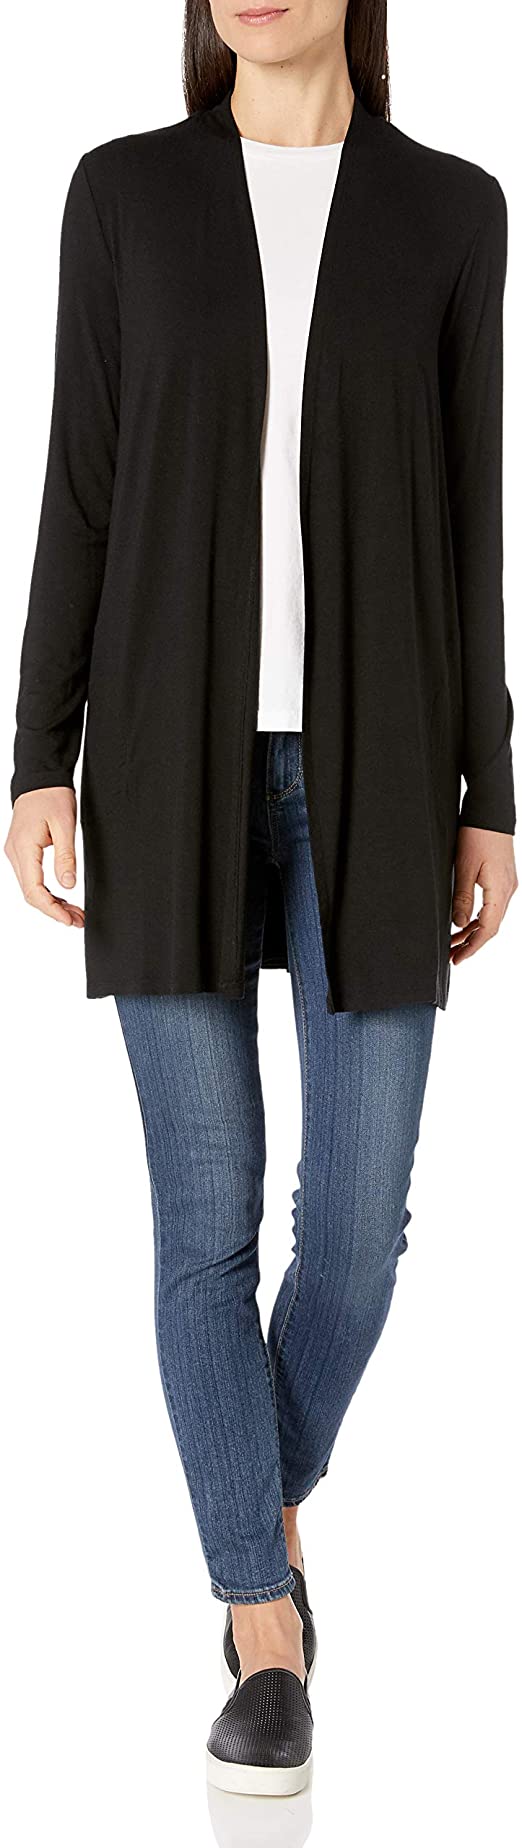 Amazon Essentials Women's Standard Long-Sleeve Open-Front Cardigan